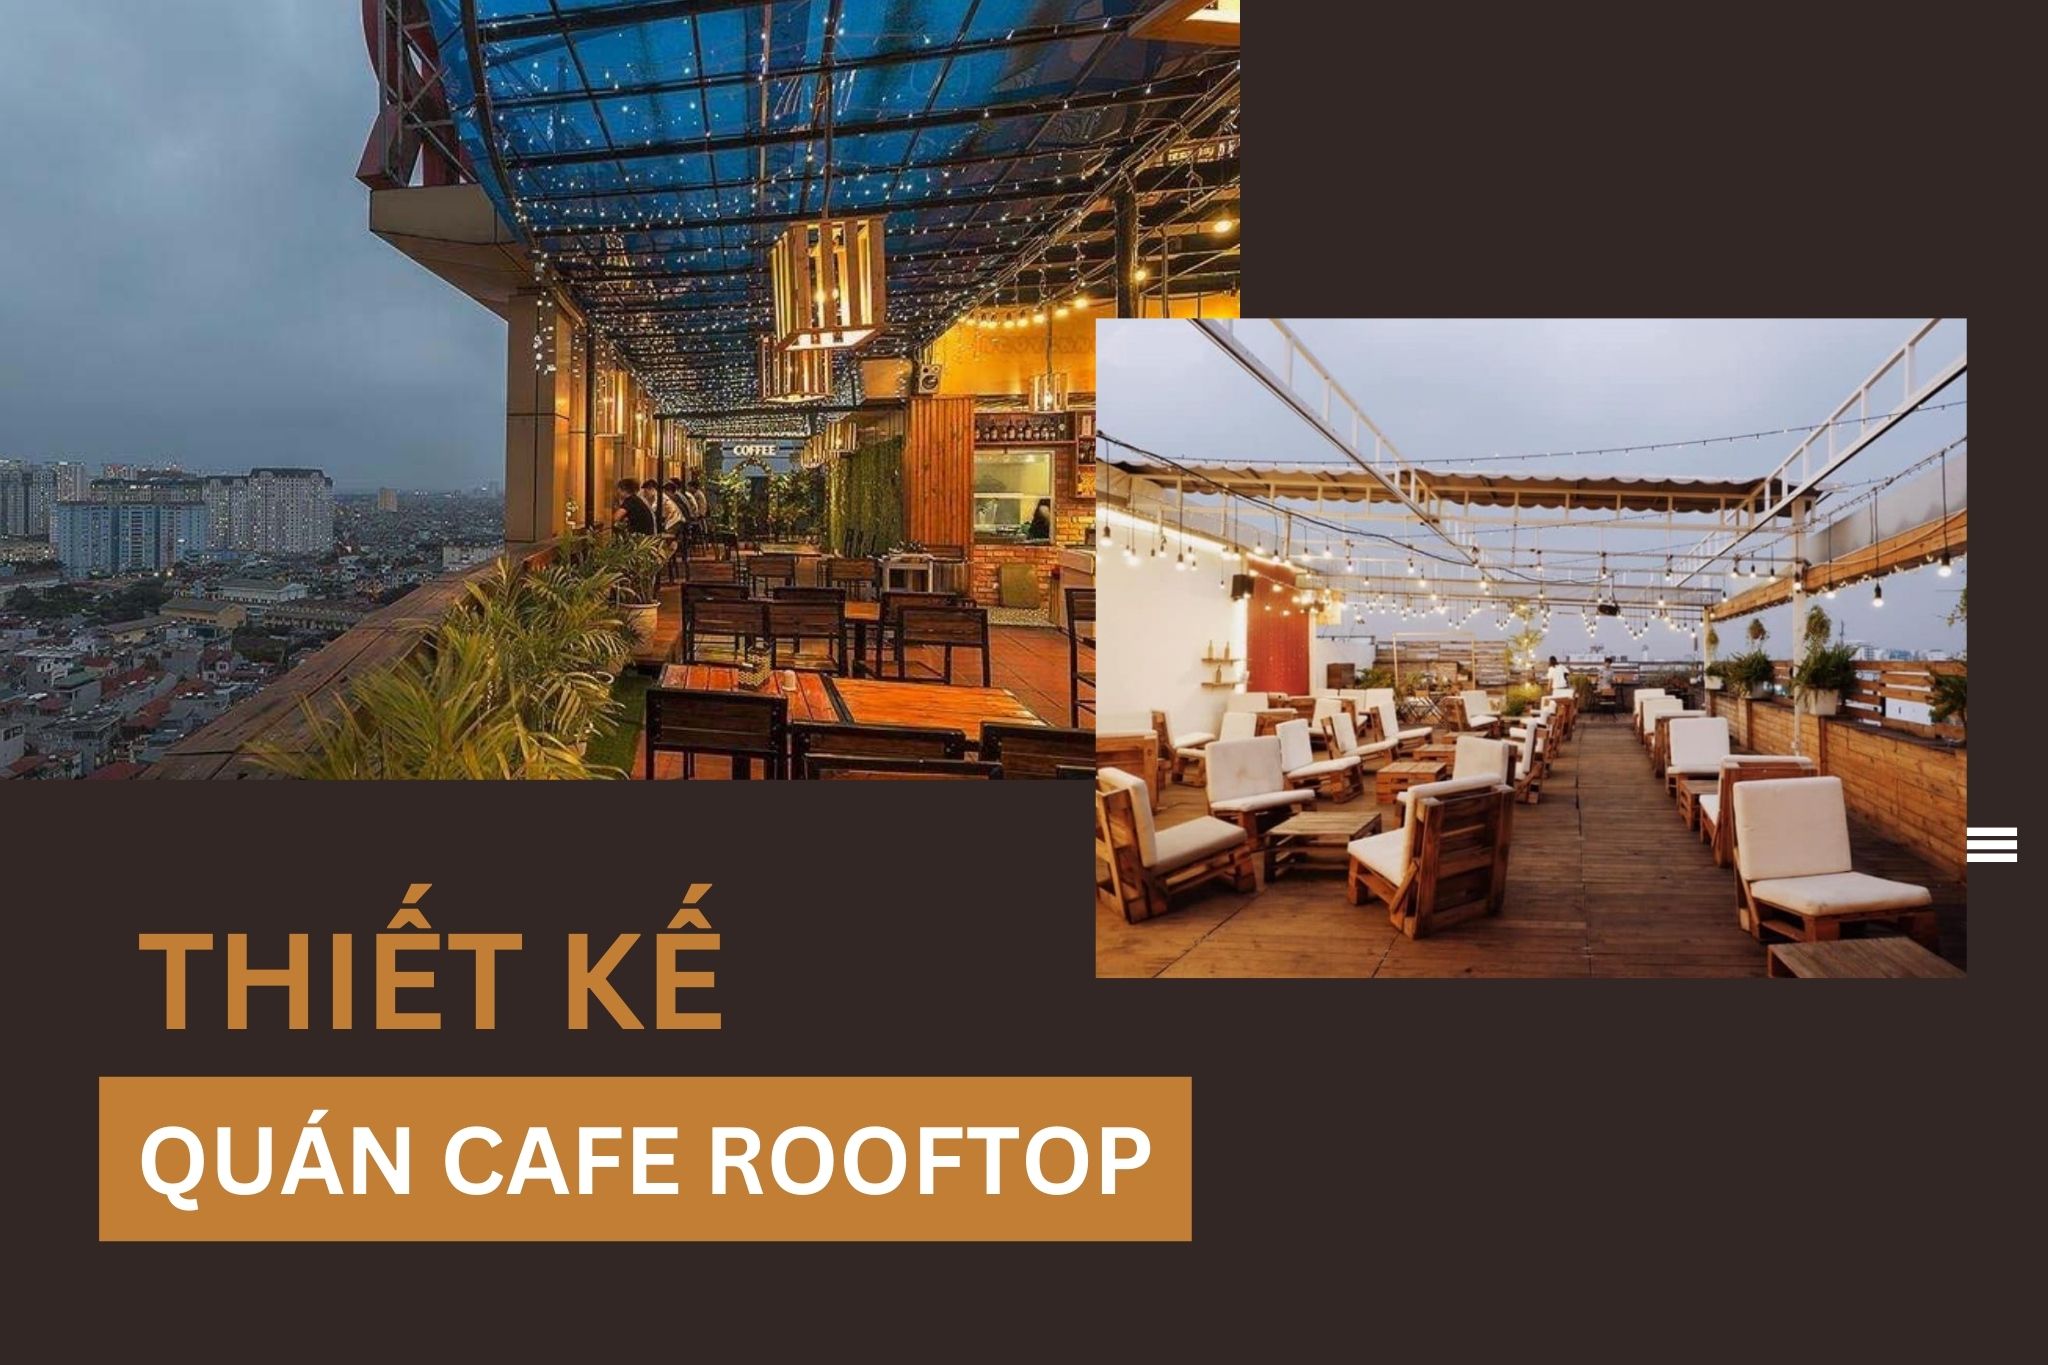 Thiết kế quán cafe rooftop thu hút nhiều khách hàng